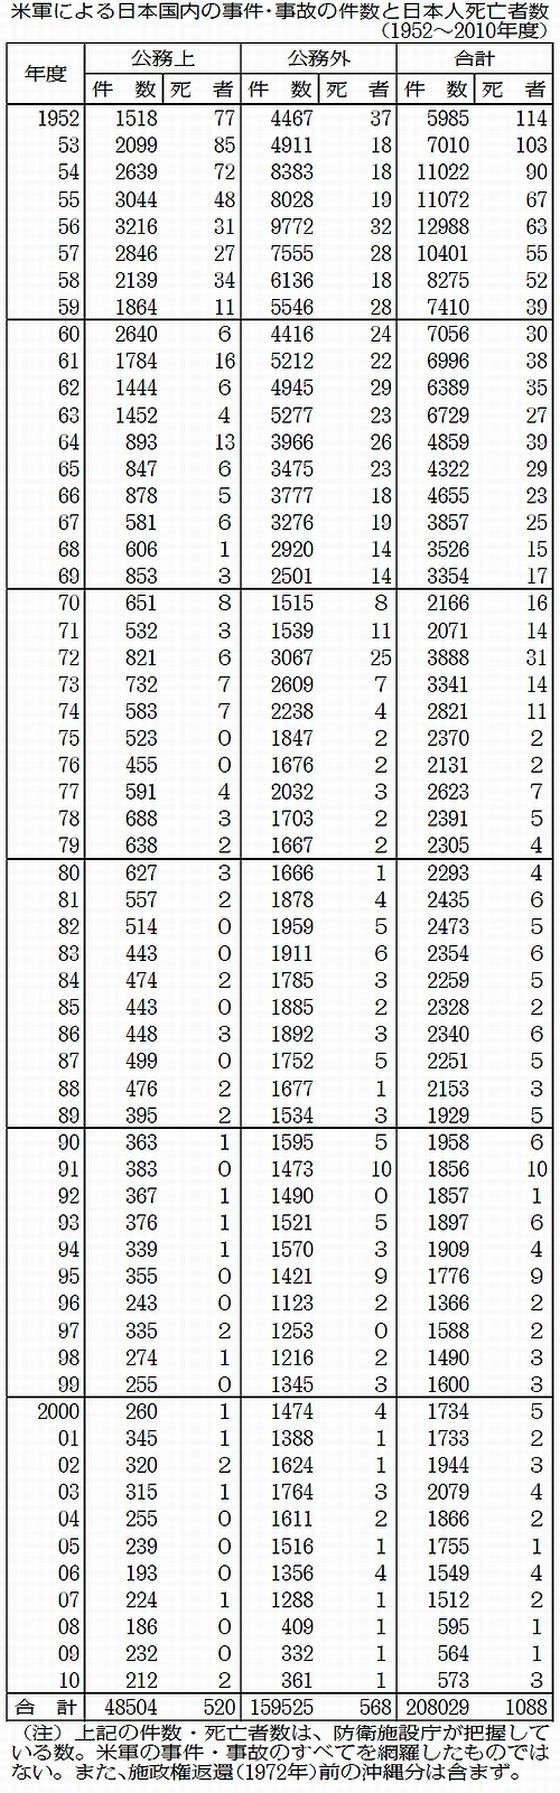 米軍による国内の事件事故件数と日本人死亡者数